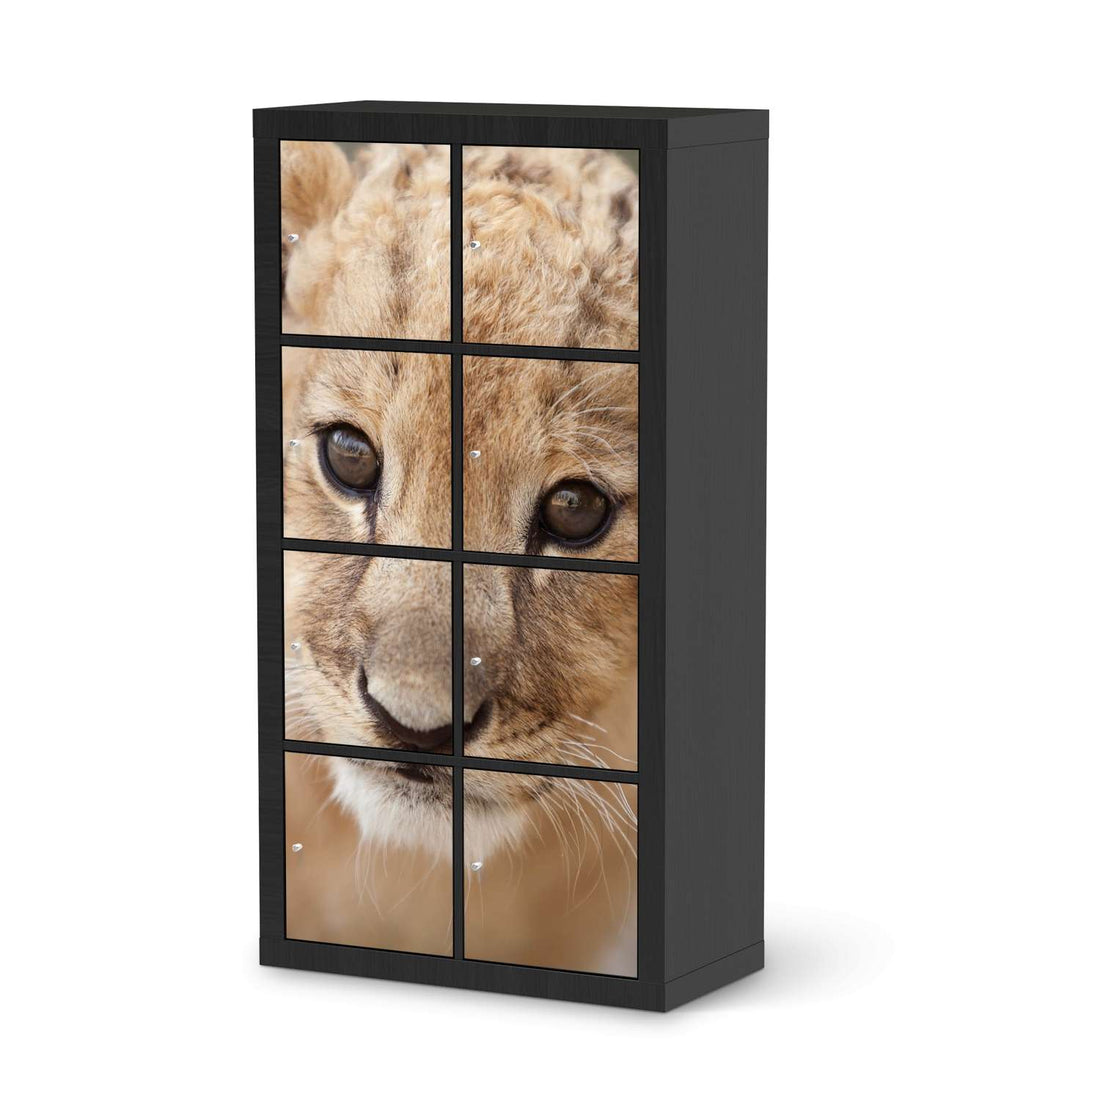 Folie für Möbel Simba - IKEA Kallax Regal 8 Türen - schwarz